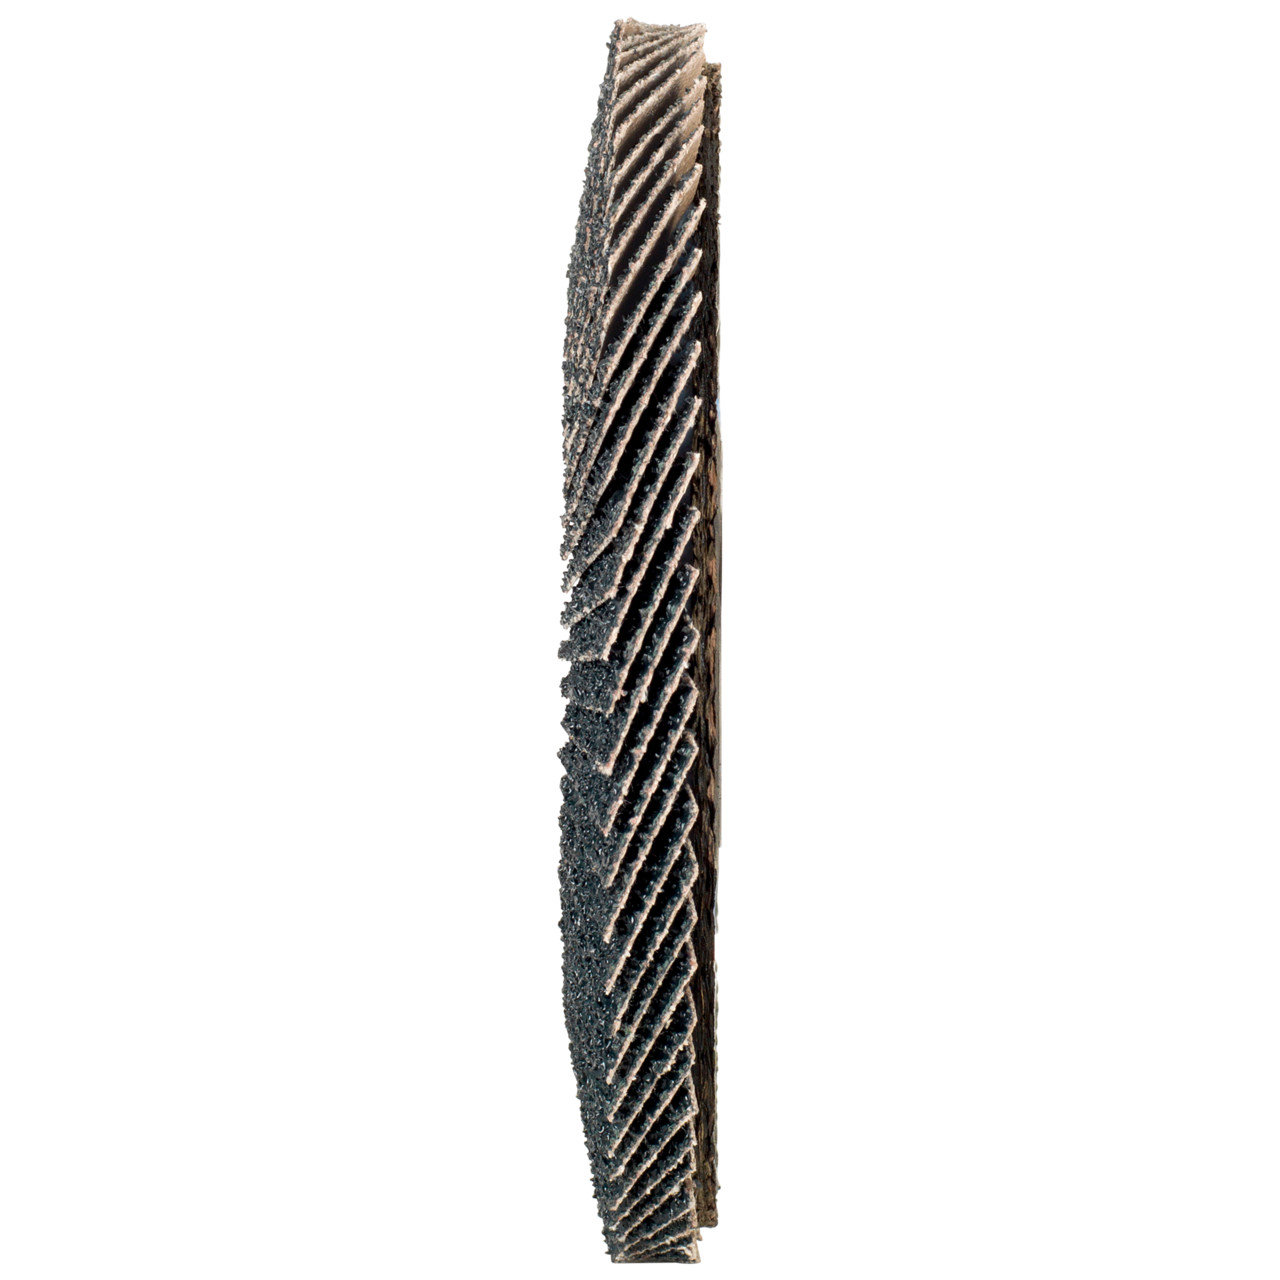 TYROLIT Fächerscheibe DxH 178x22,2 2in1 für Stahl & Edelstahl, P40, Form: 27A - gekröpfte Ausführung (Glasfaserträgerkörperausführung), Art. 668670